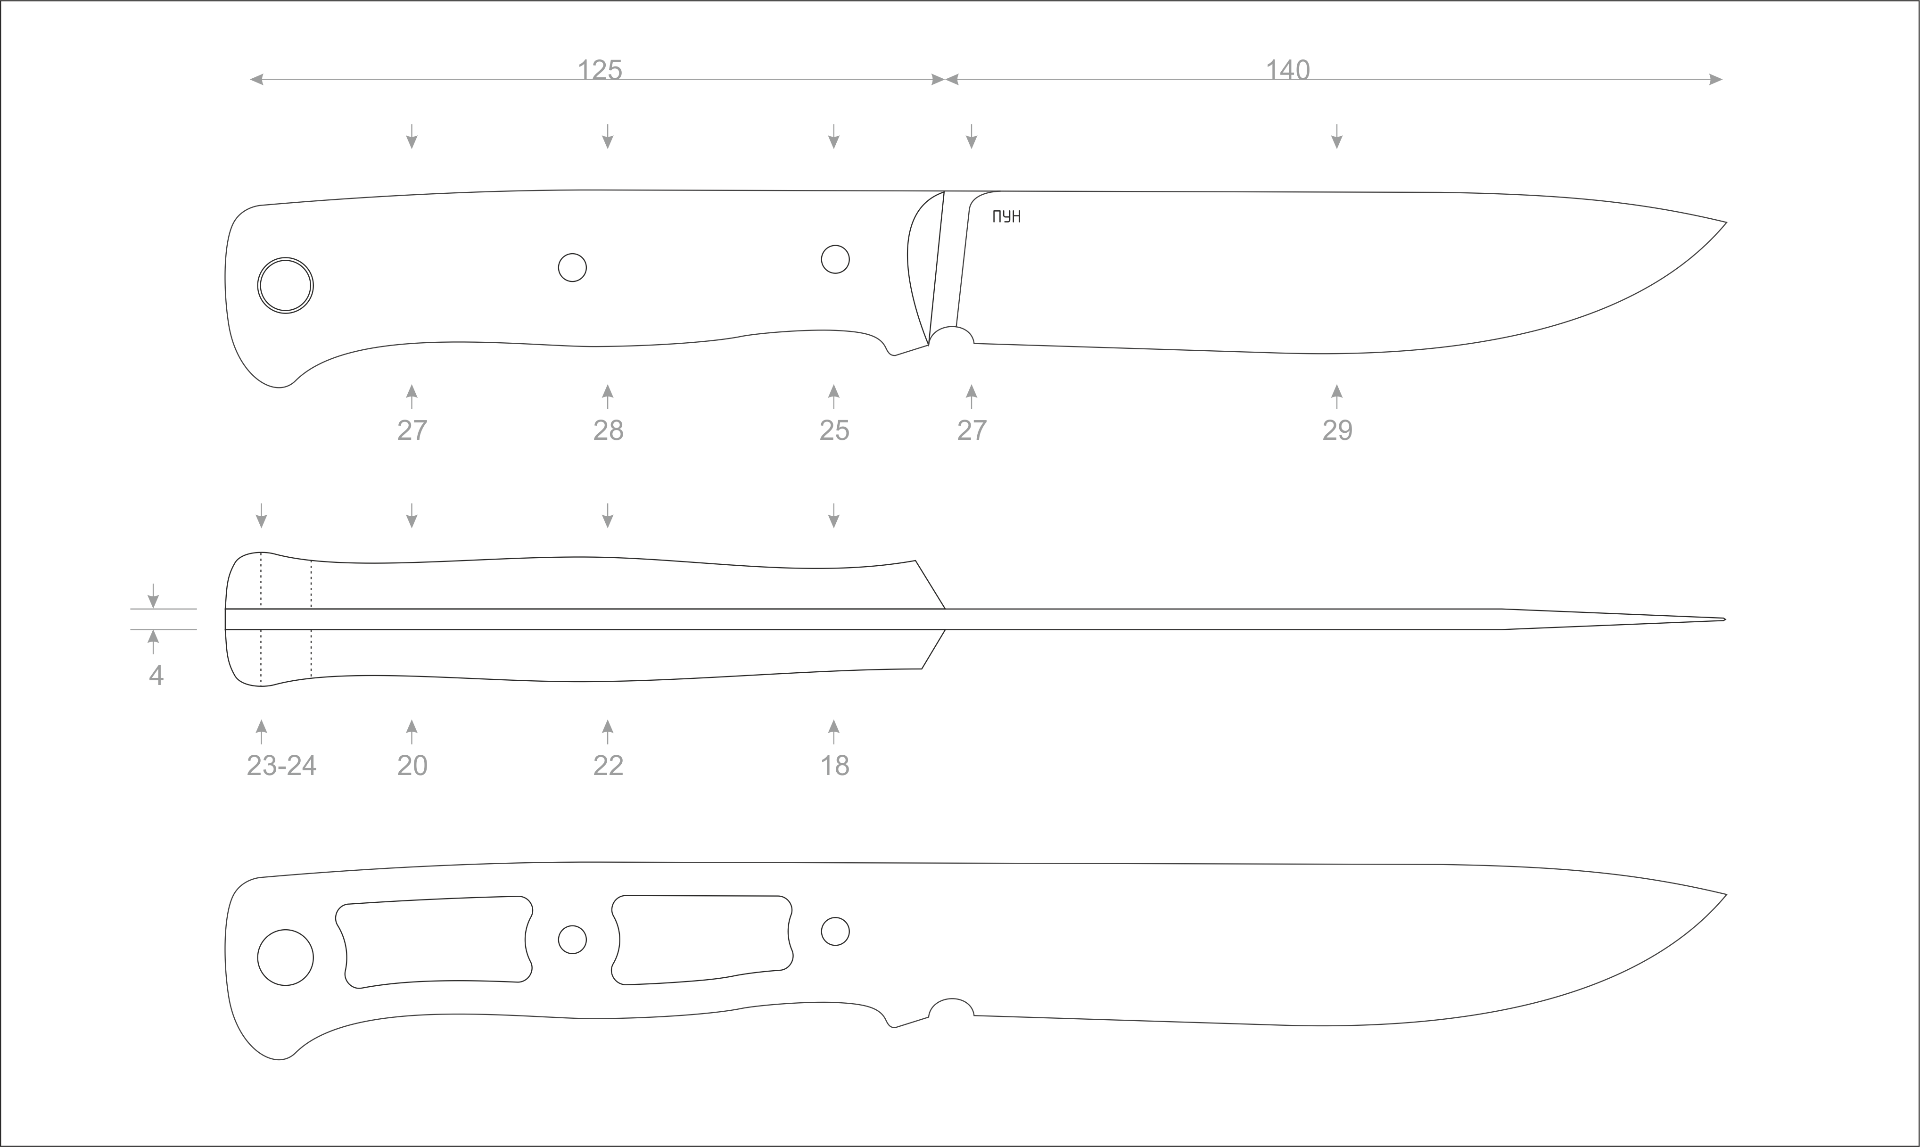 Размеры лезвий ножей